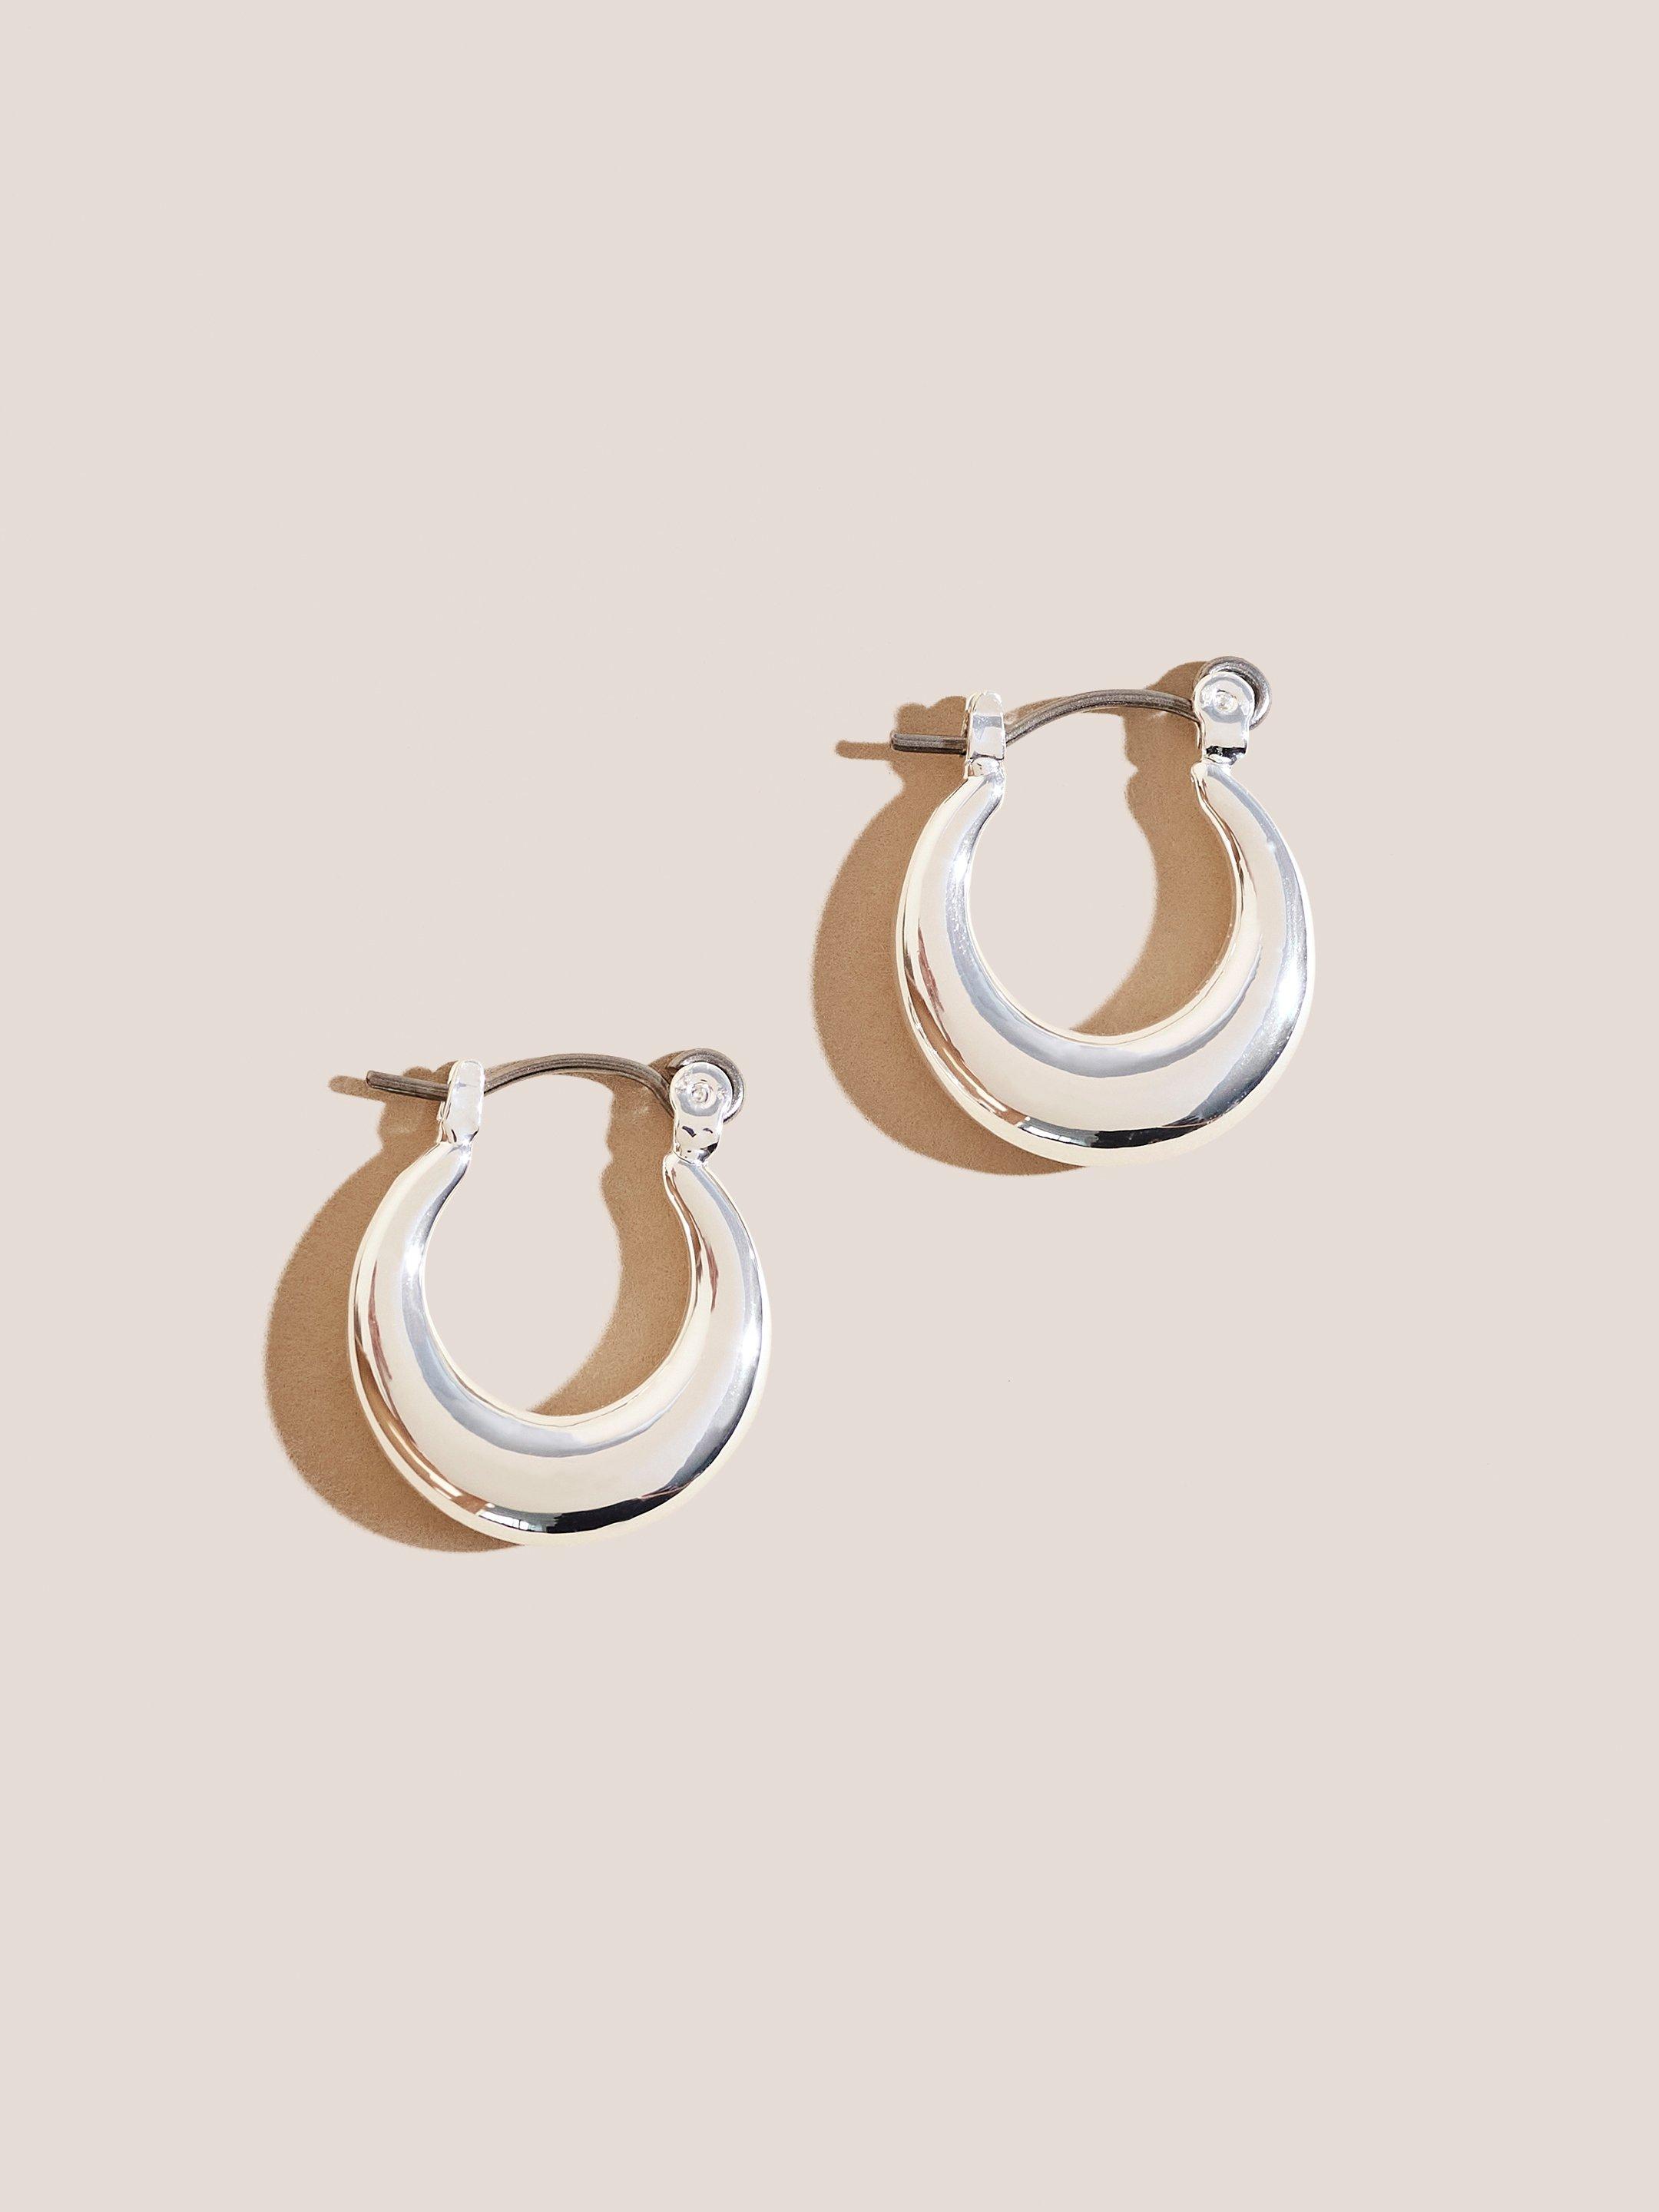 Silver Plated Hoop Earrings in SLV TN MET - FLAT FRONT